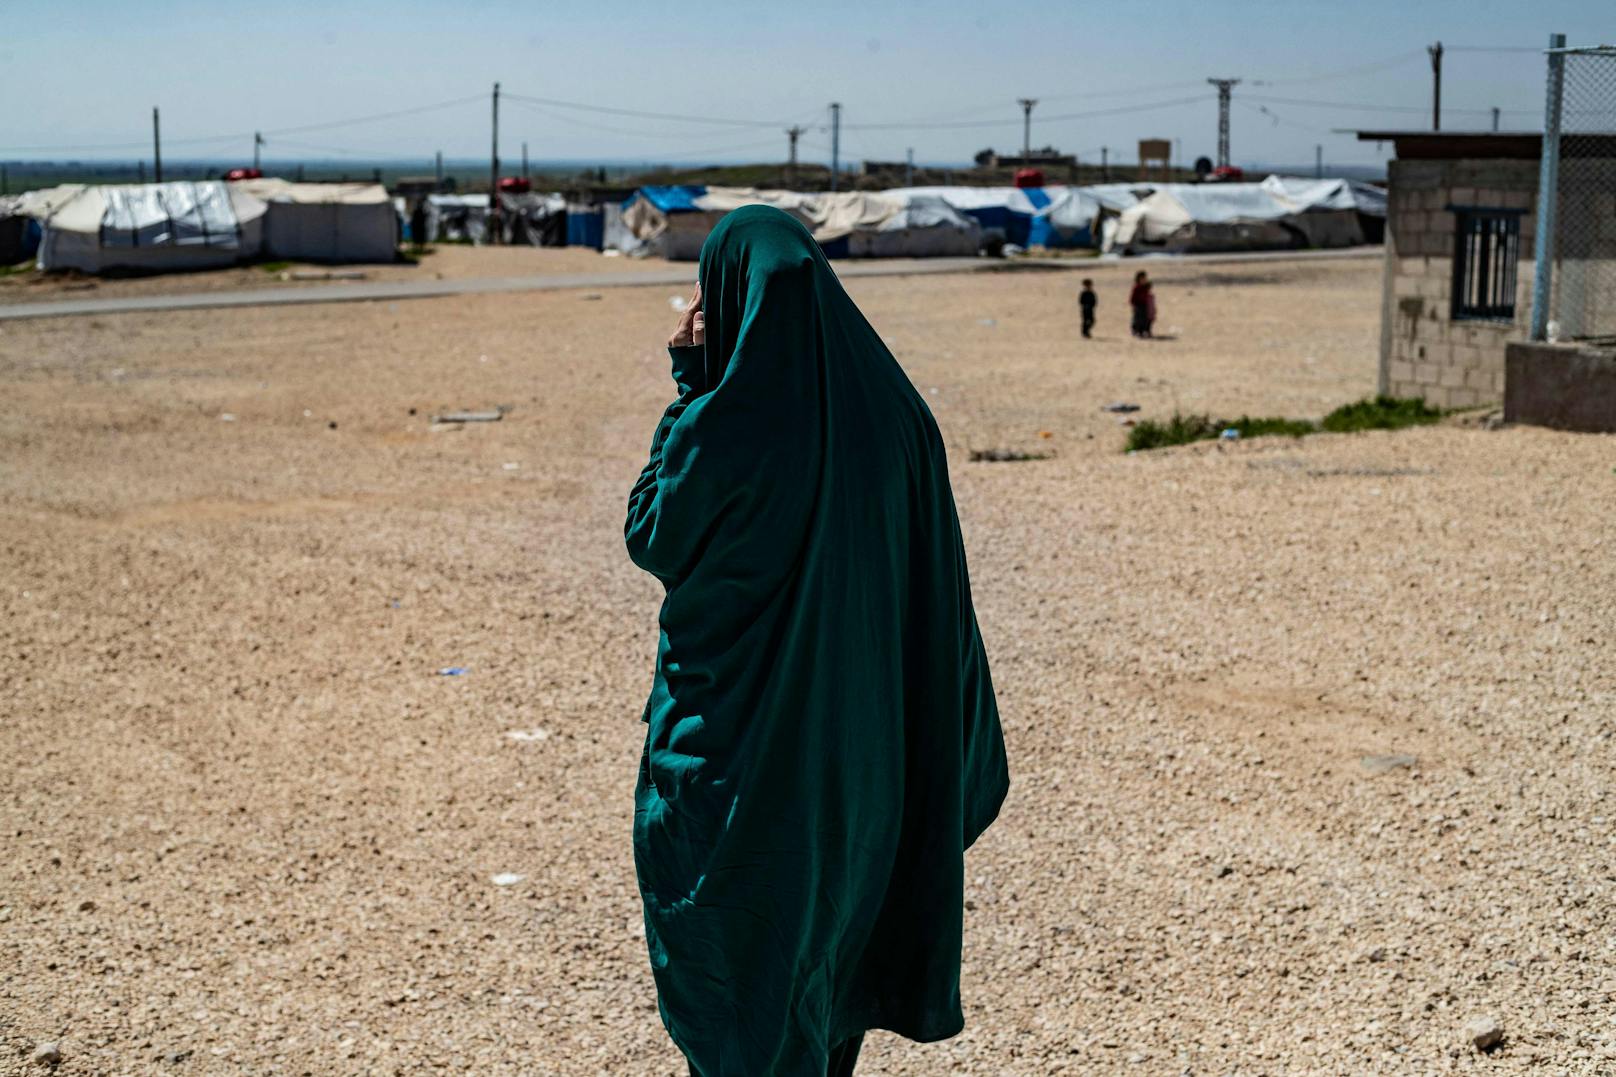 Gleich drei junge Österreicherinnen befinden sich im syrischen Camp Roj – unter schrecklichen Umständen. (Archivfoto)